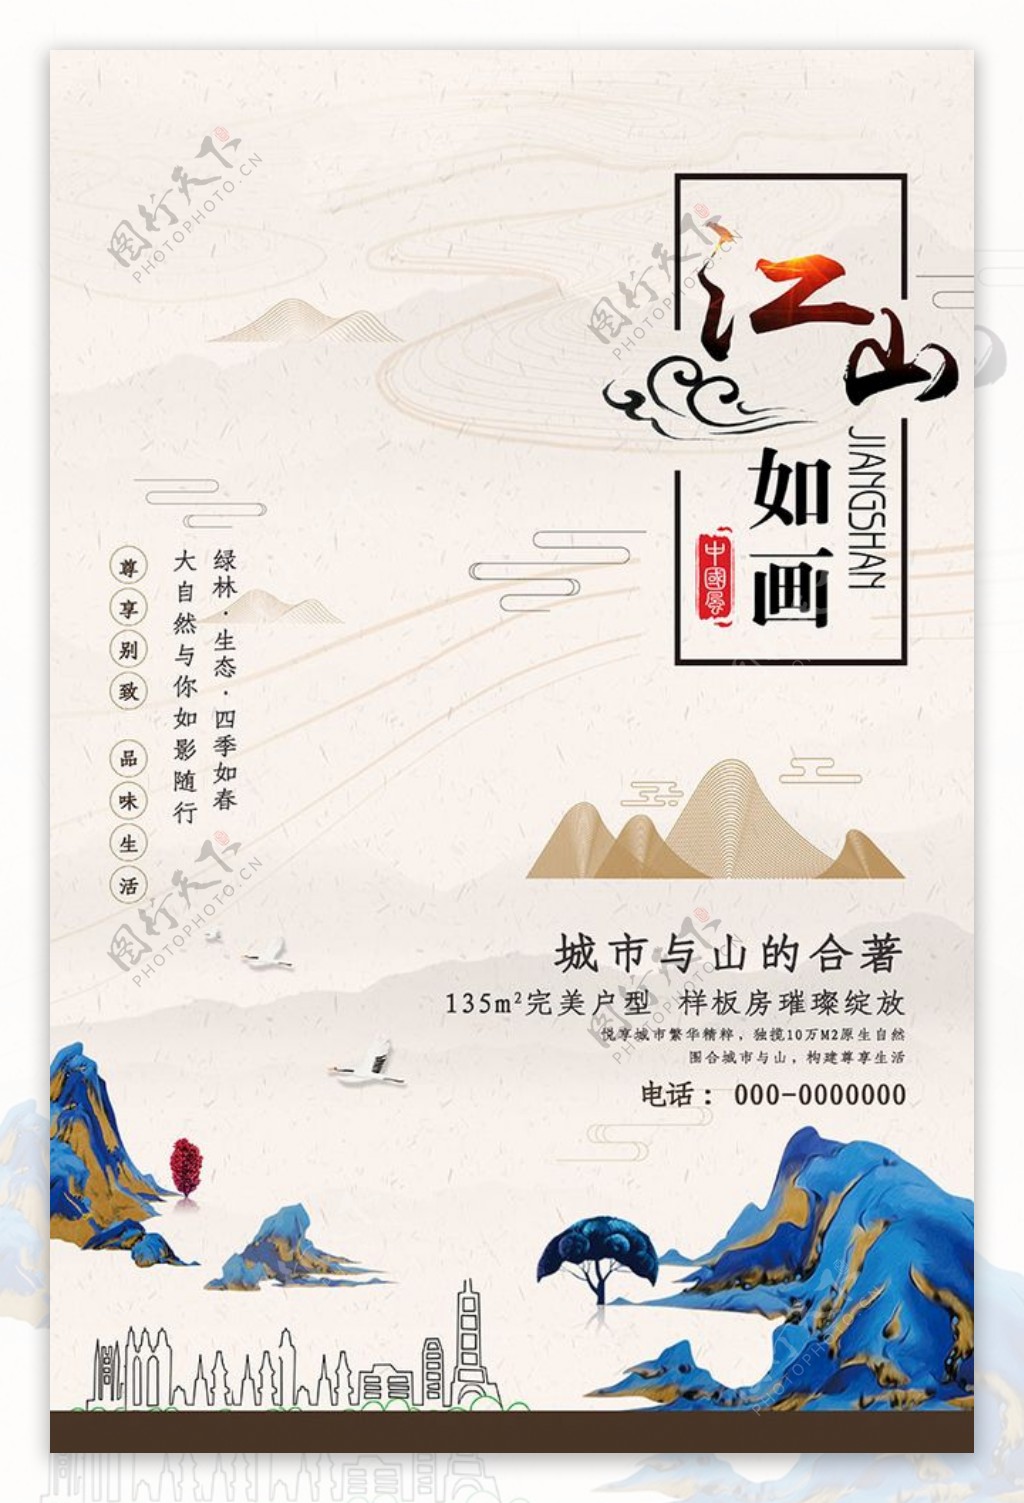 中式风房地产楼盘开盘宣传海报